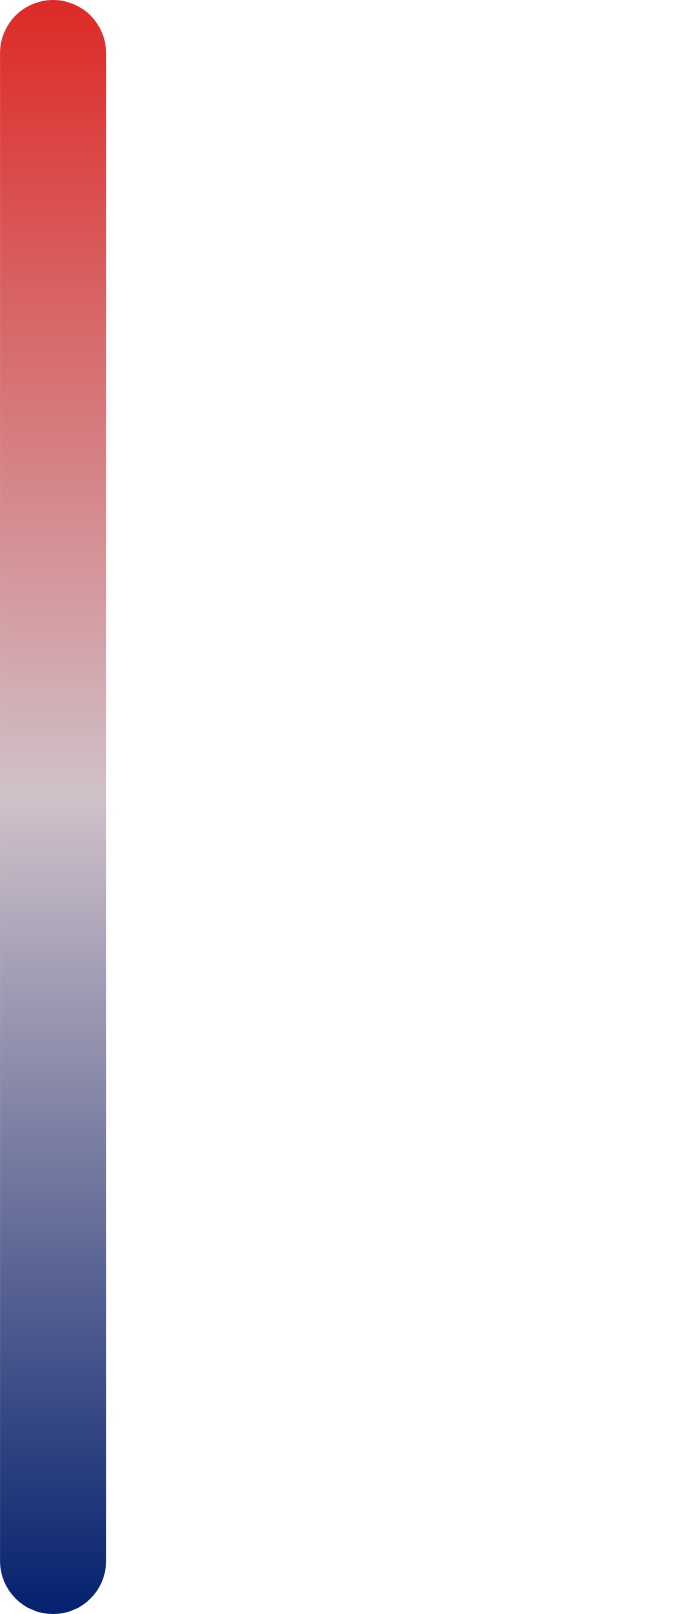 Aspen Aerogels logo for dark backgrounds (transparent PNG)